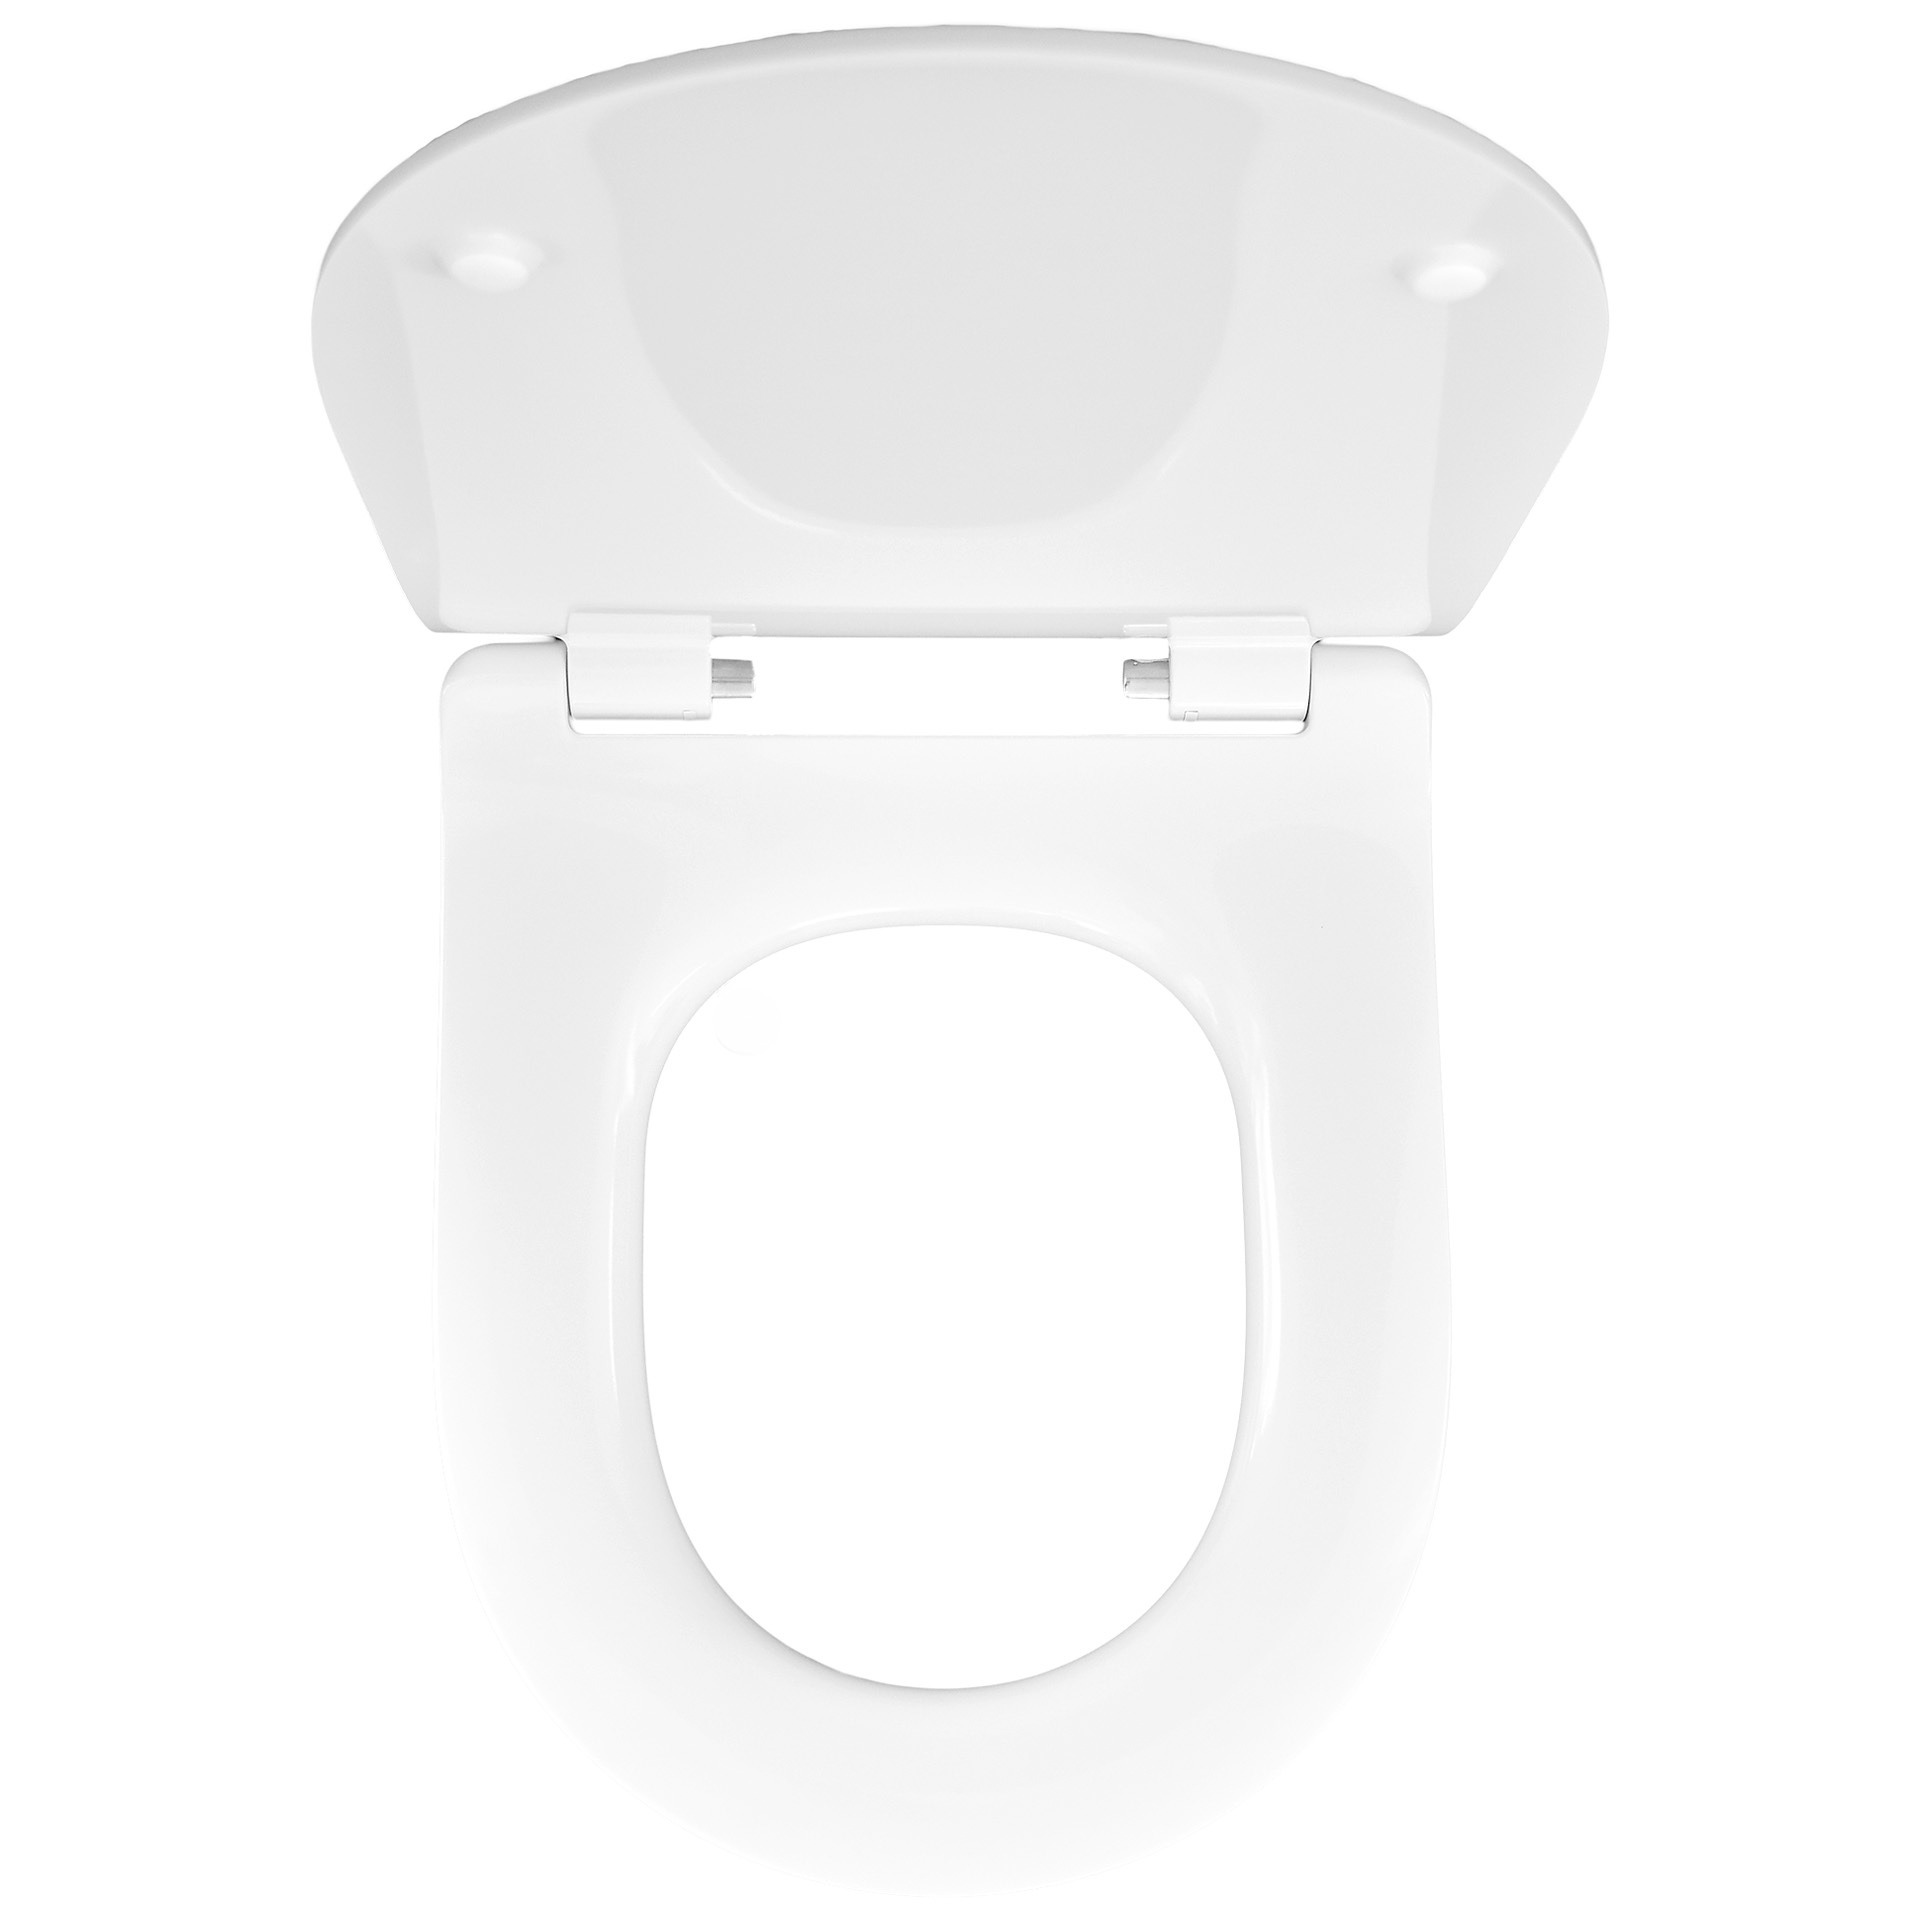 Temtasi WC-Sitz Toilettensitz Slim für Wand-Dusch-WC mit Absenkautomatik weiß